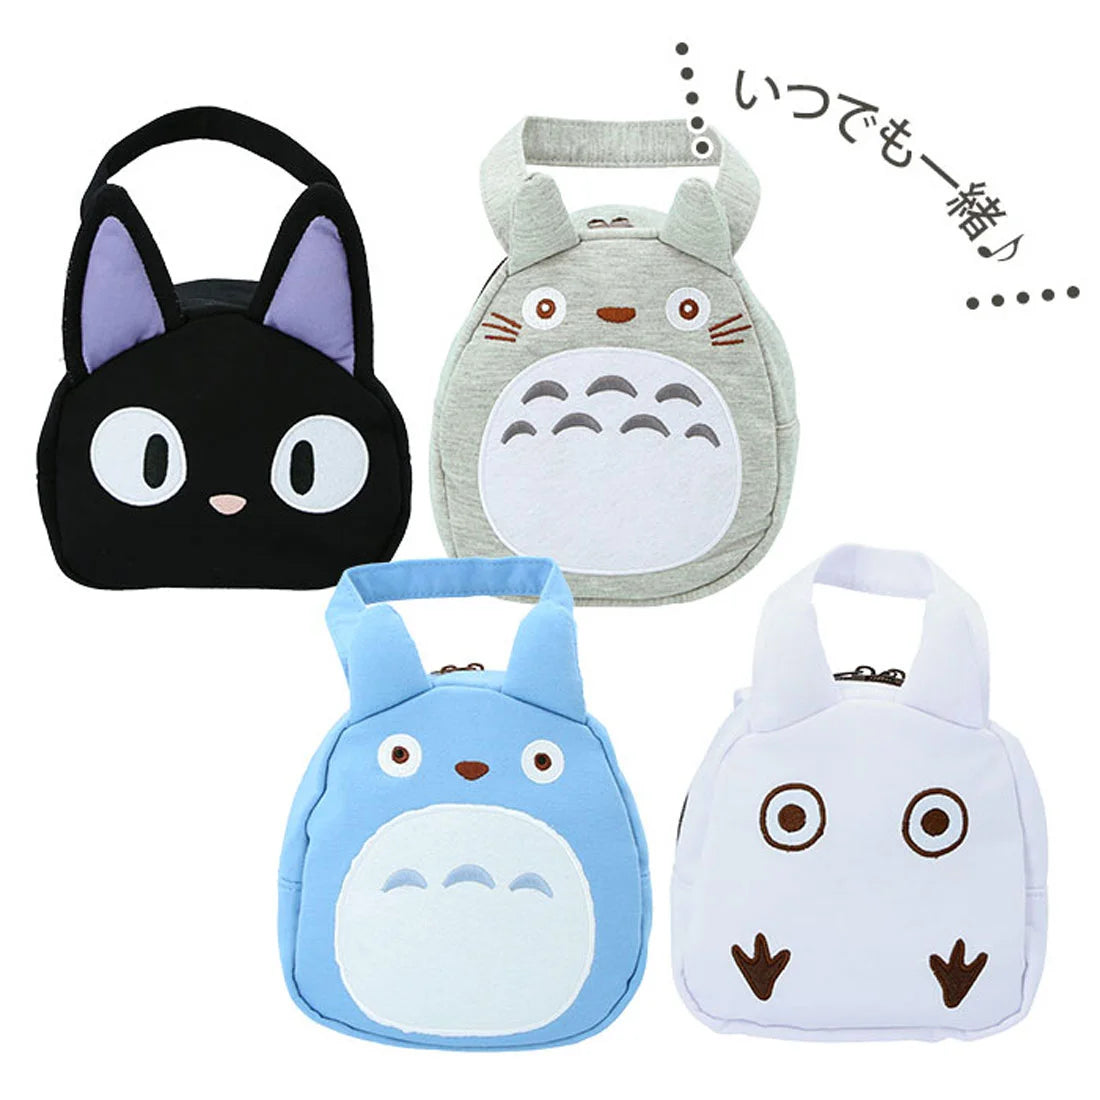 Hand Bag - Totoro & Jiji (Japan Edition)